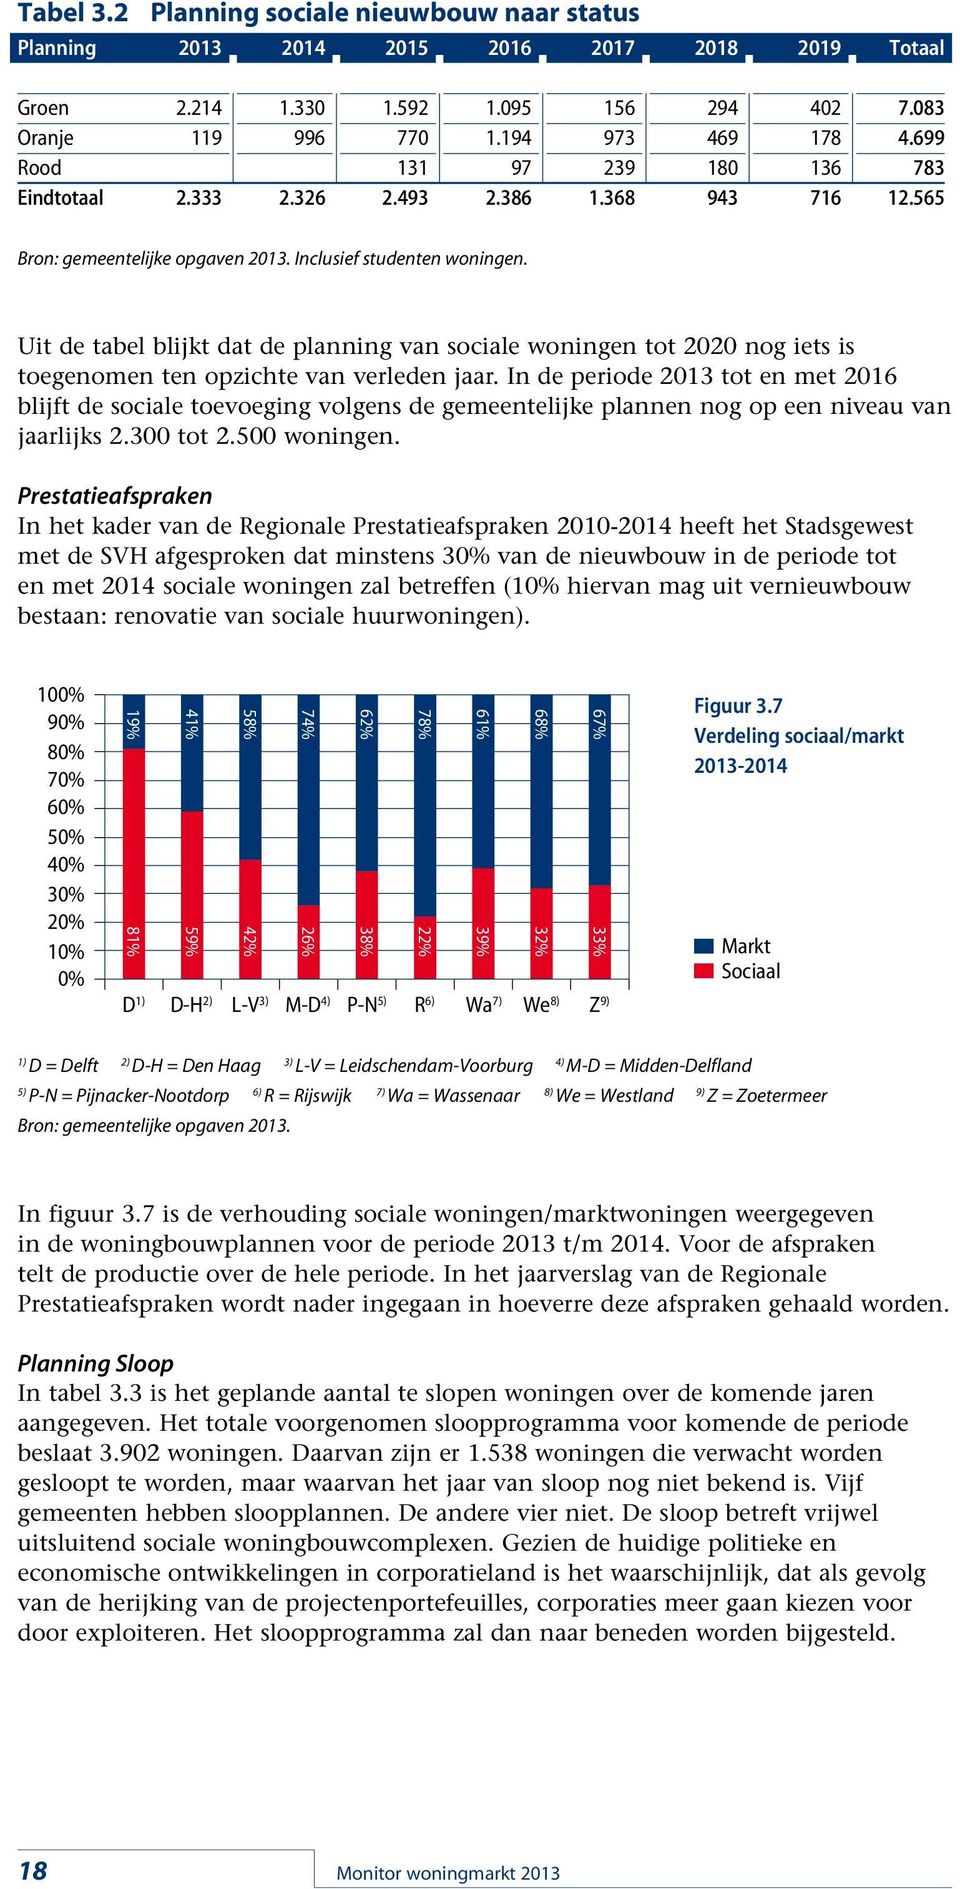 Uit de tabel blijkt dat de planning van sociale woningen tot 22 nog iets is toegenomen ten opzichte van verleden jaar.